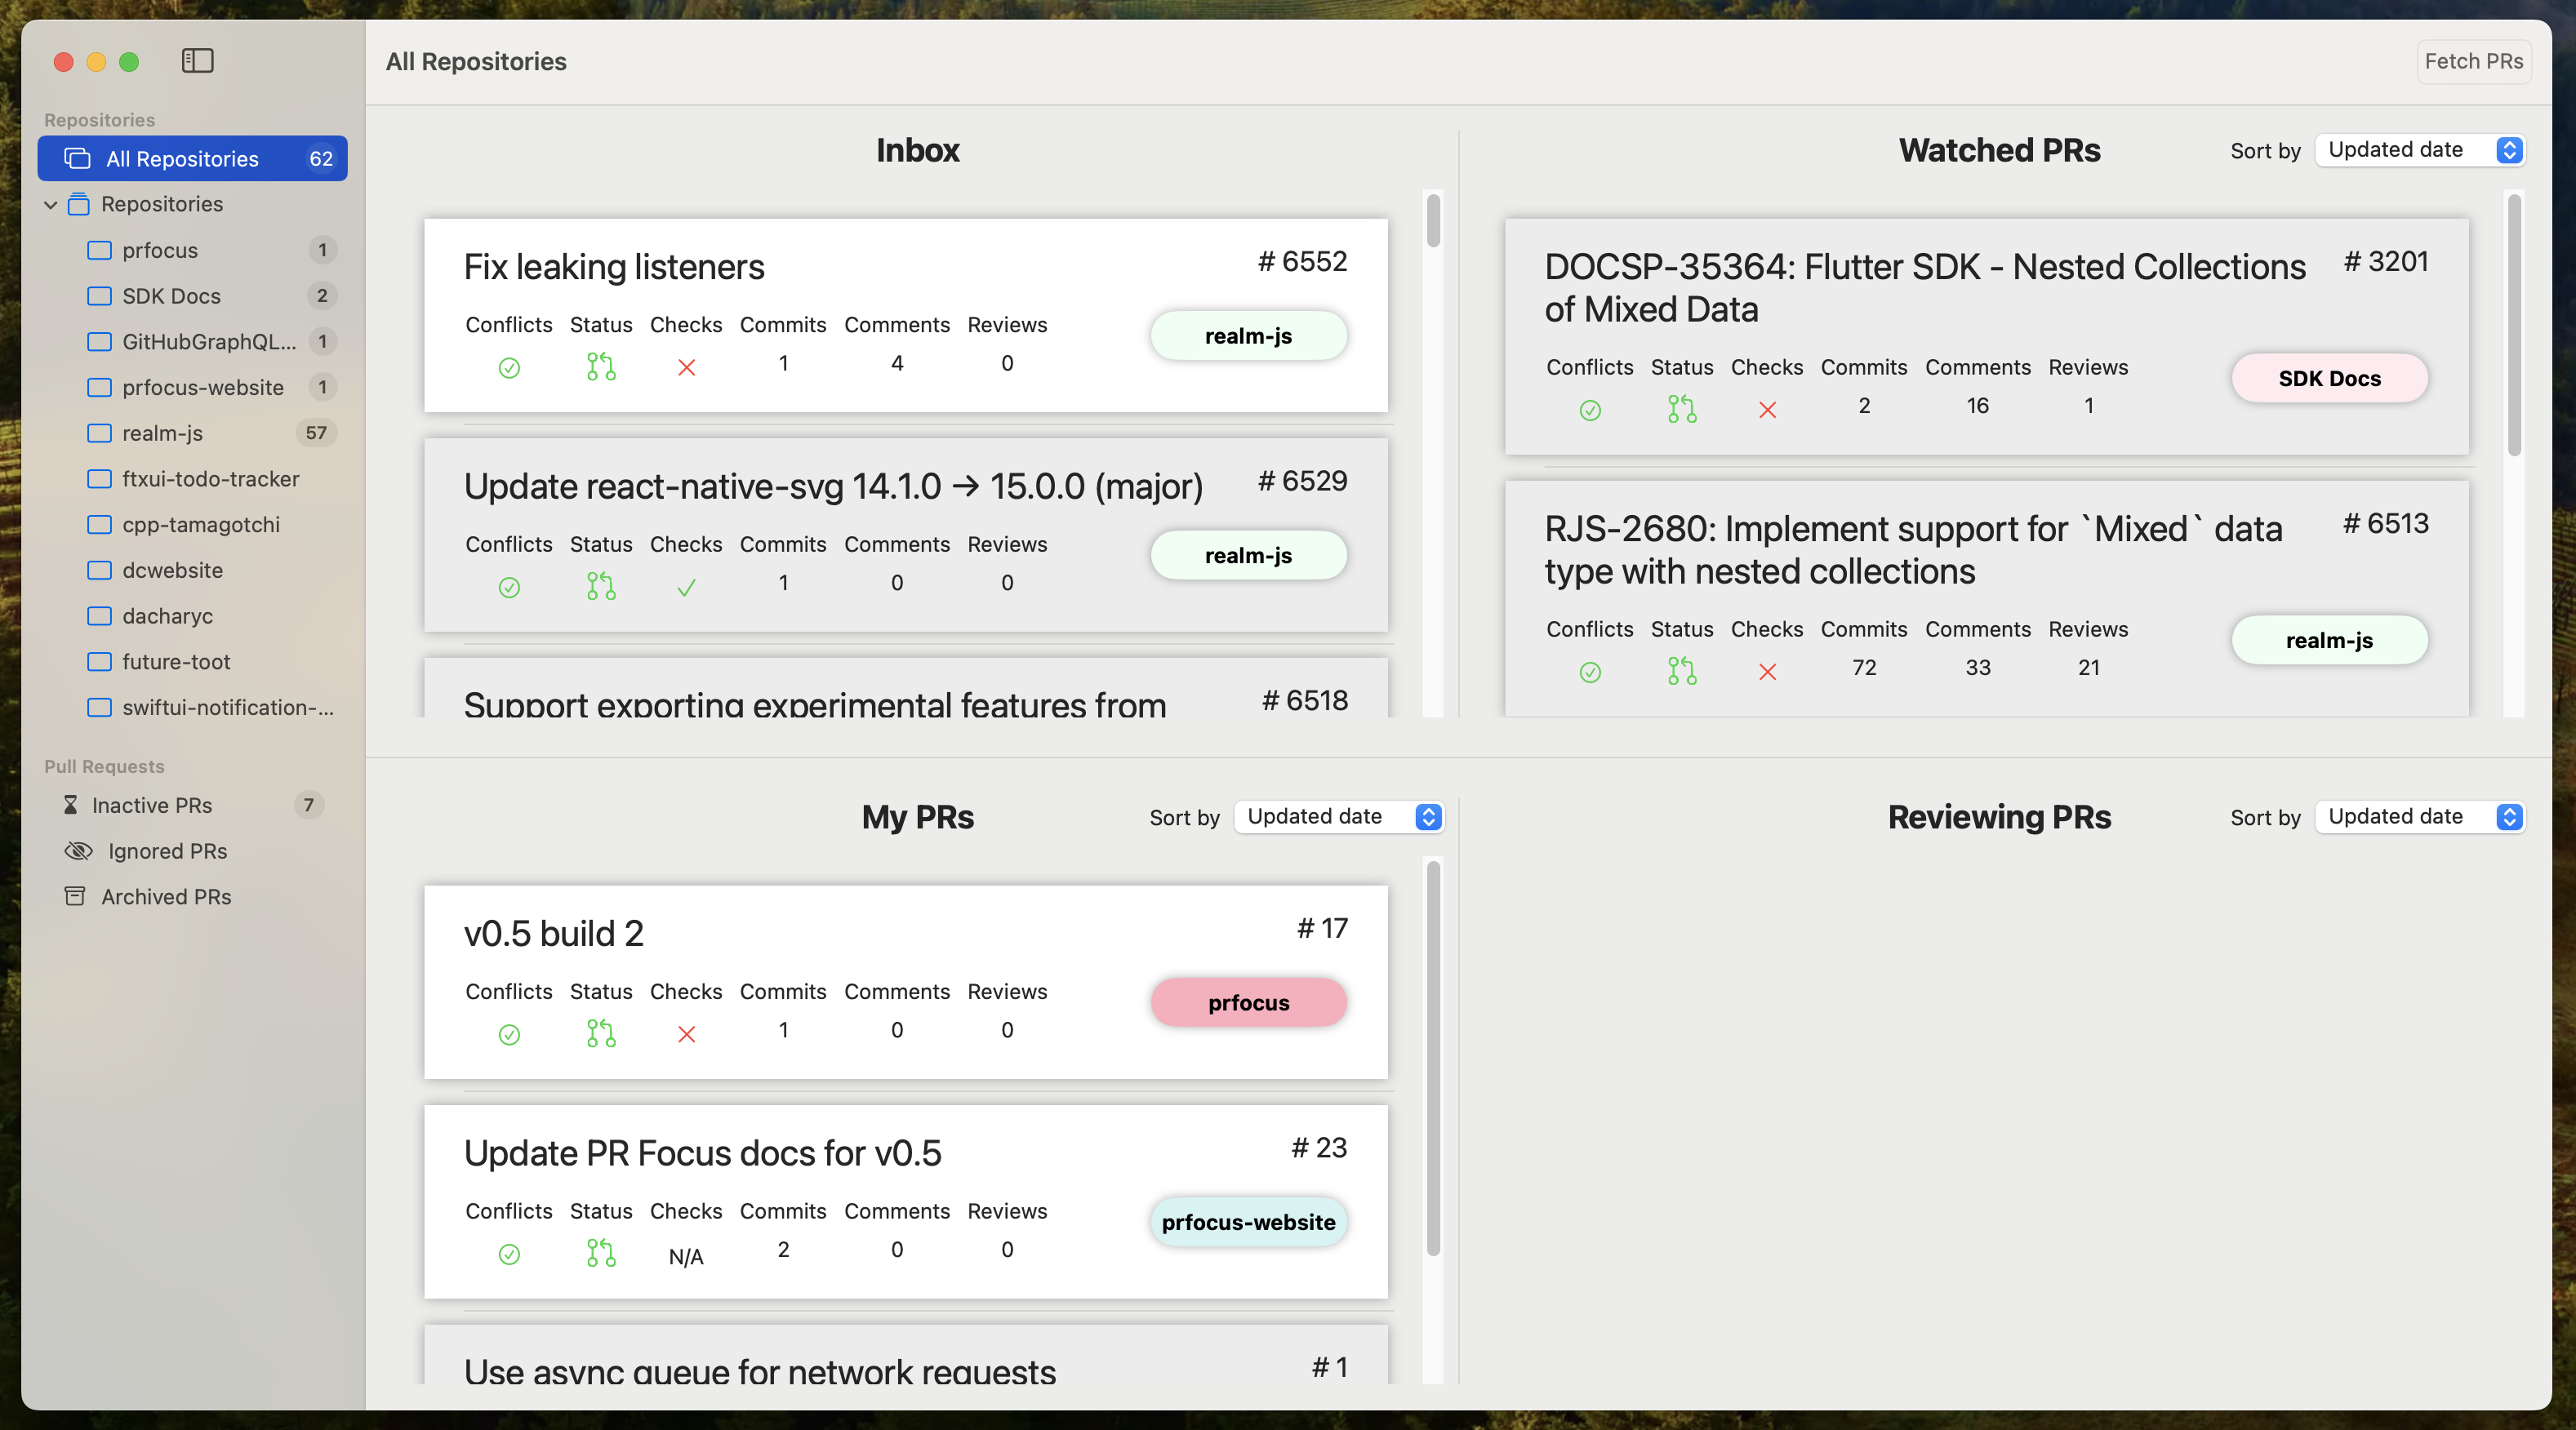 Screenshot showing the Repository Dashboard